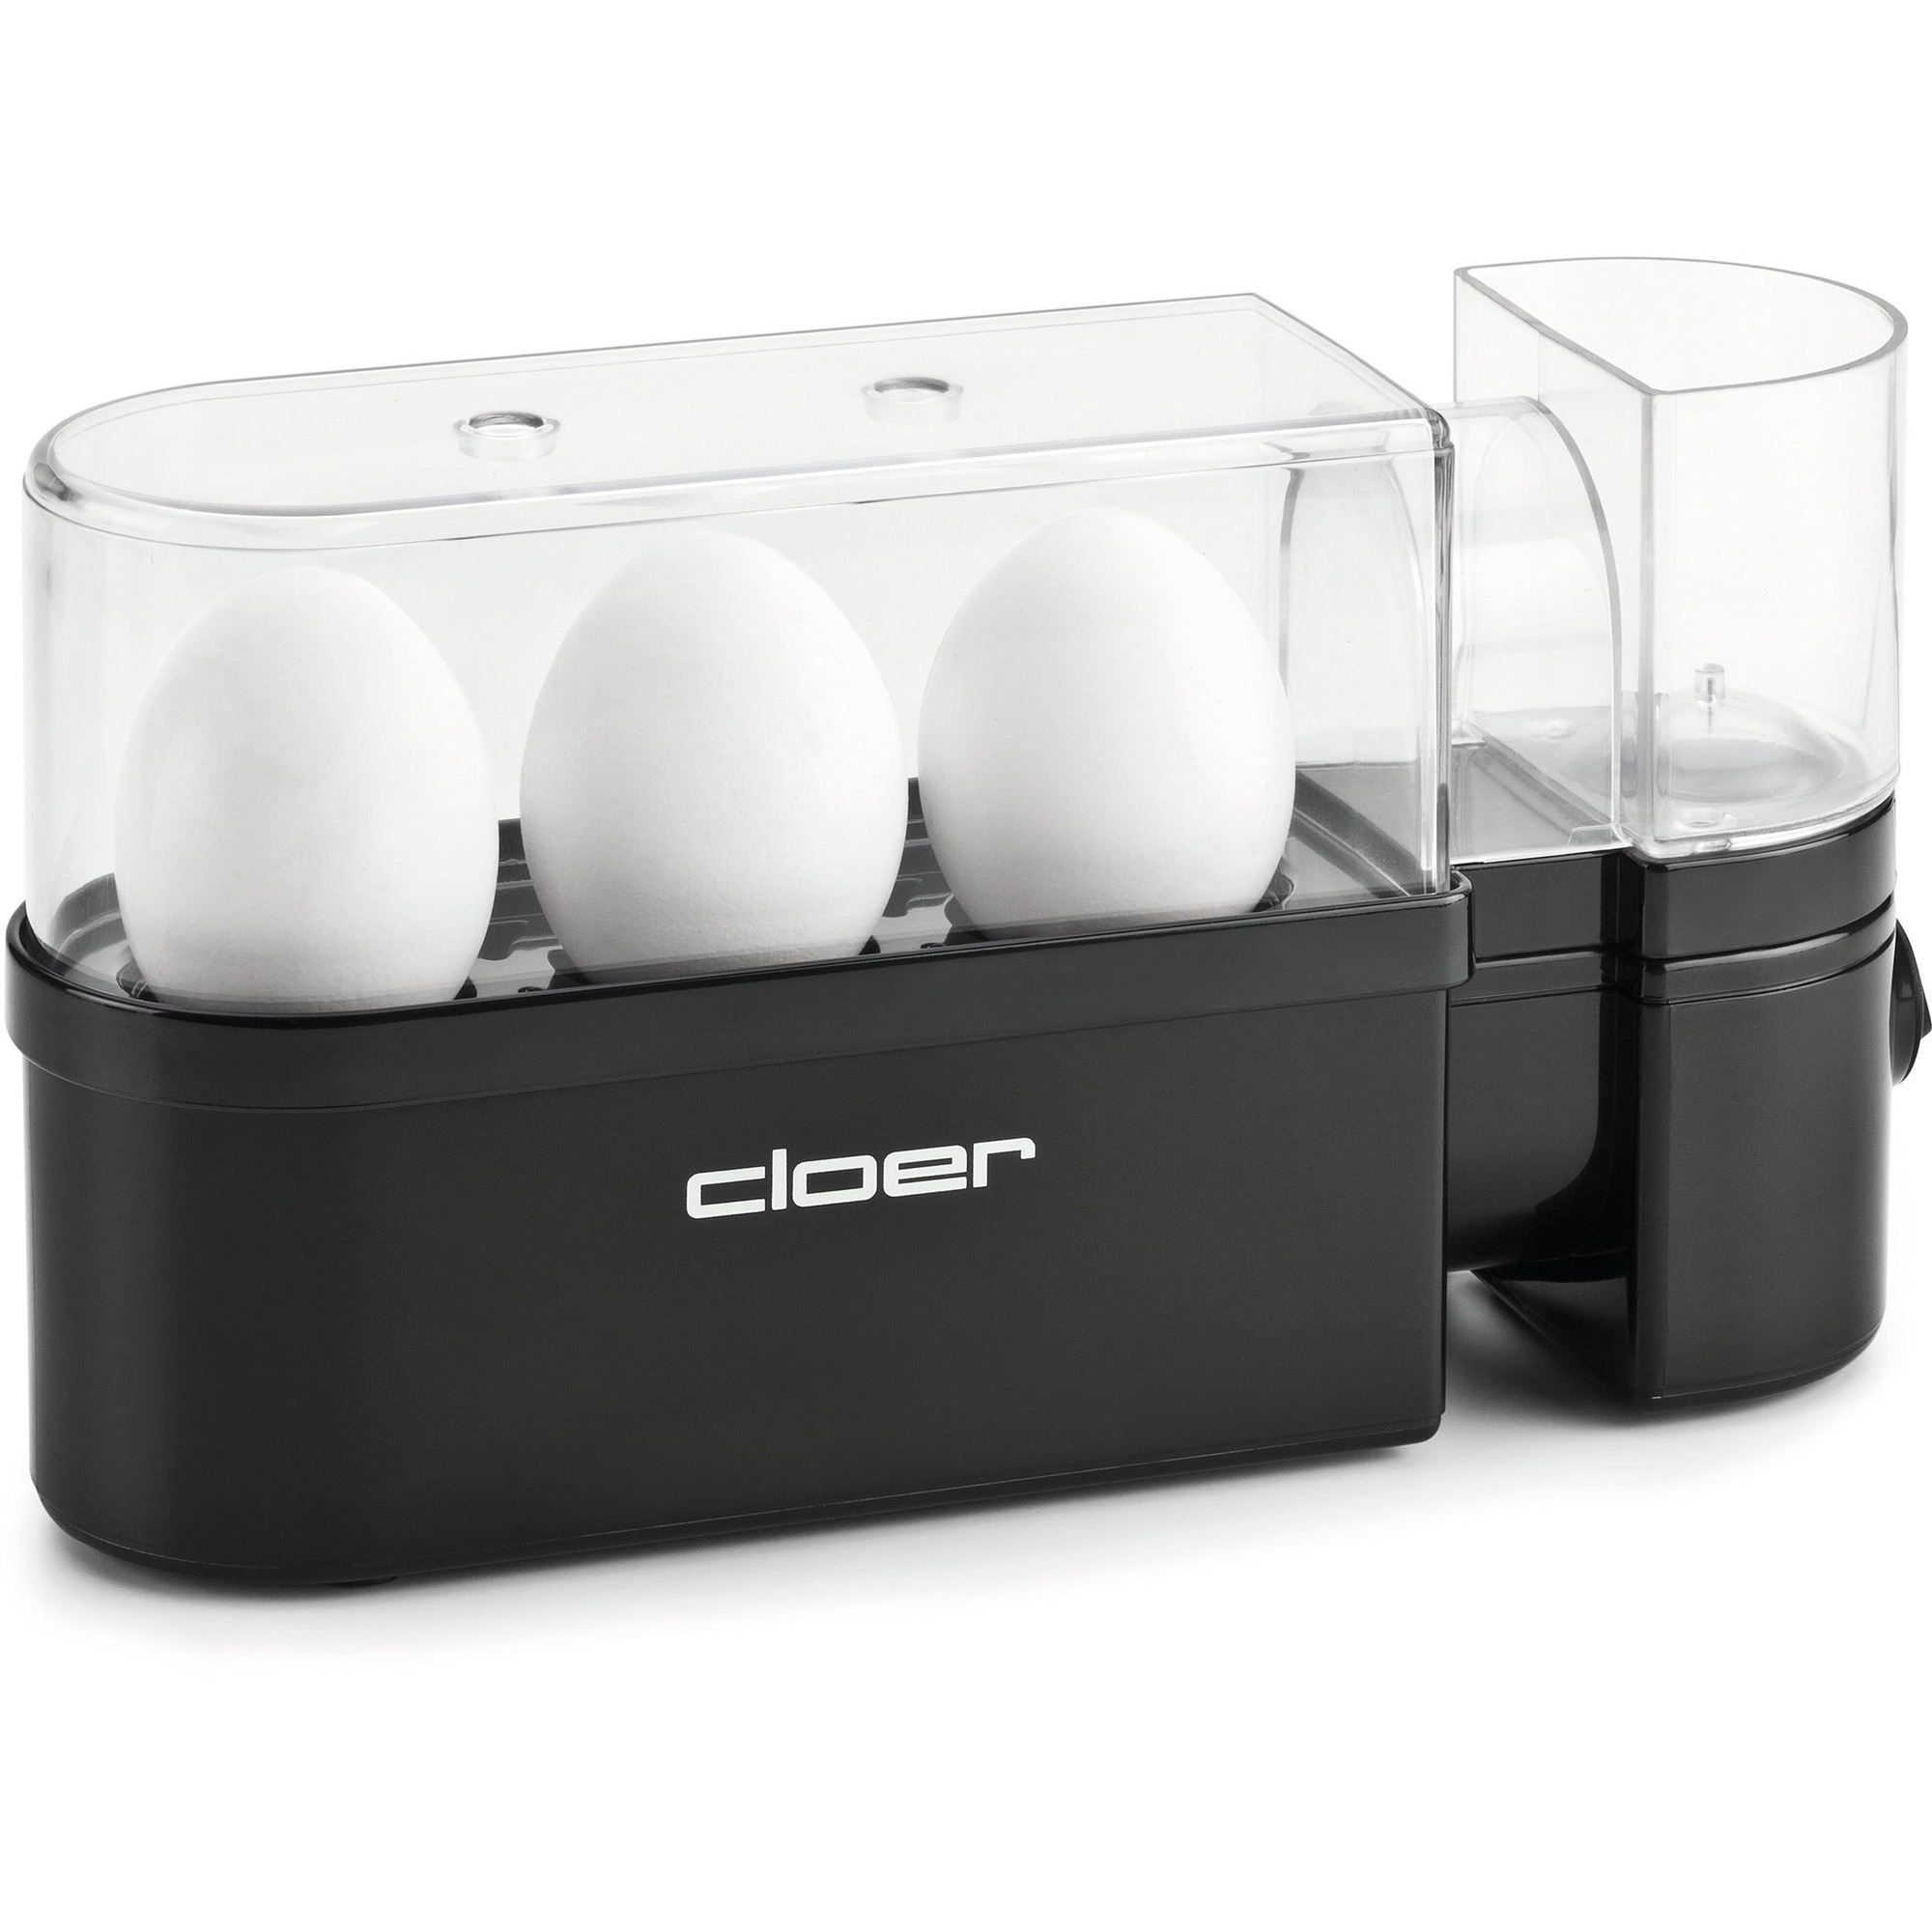 Cloer Äggkokare 3 ägg – Svart